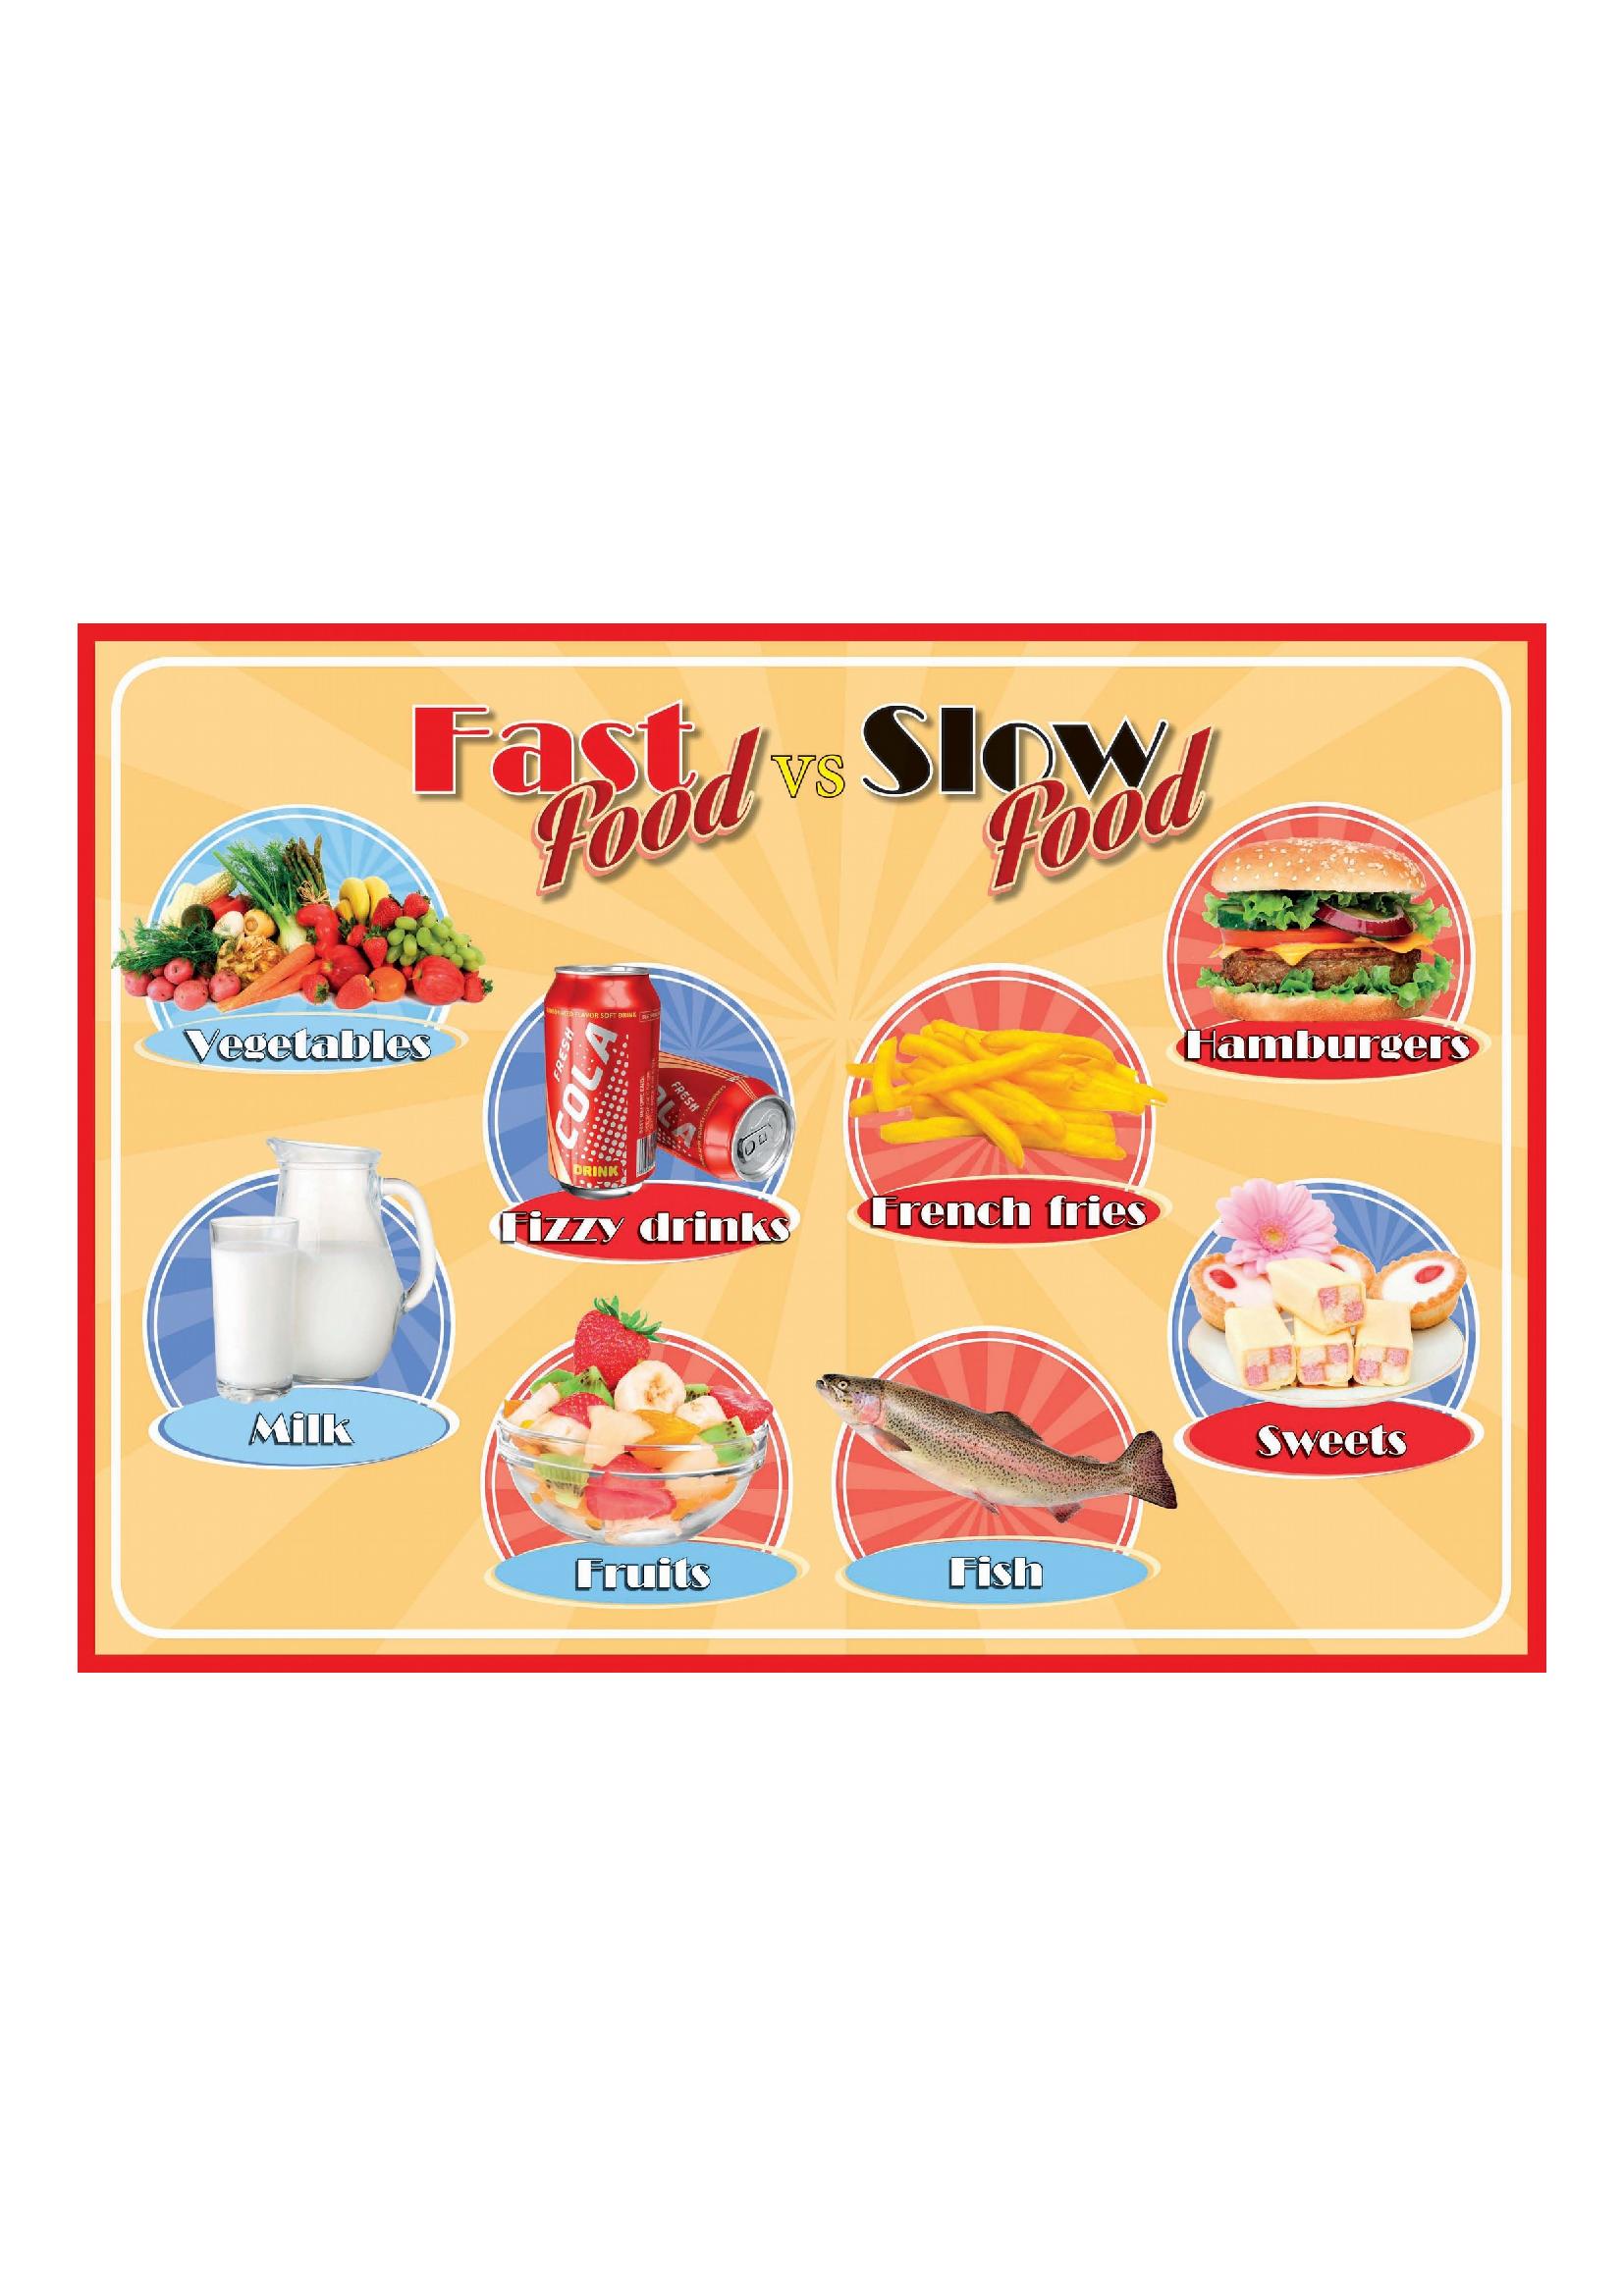 Fast food vs. Slow food